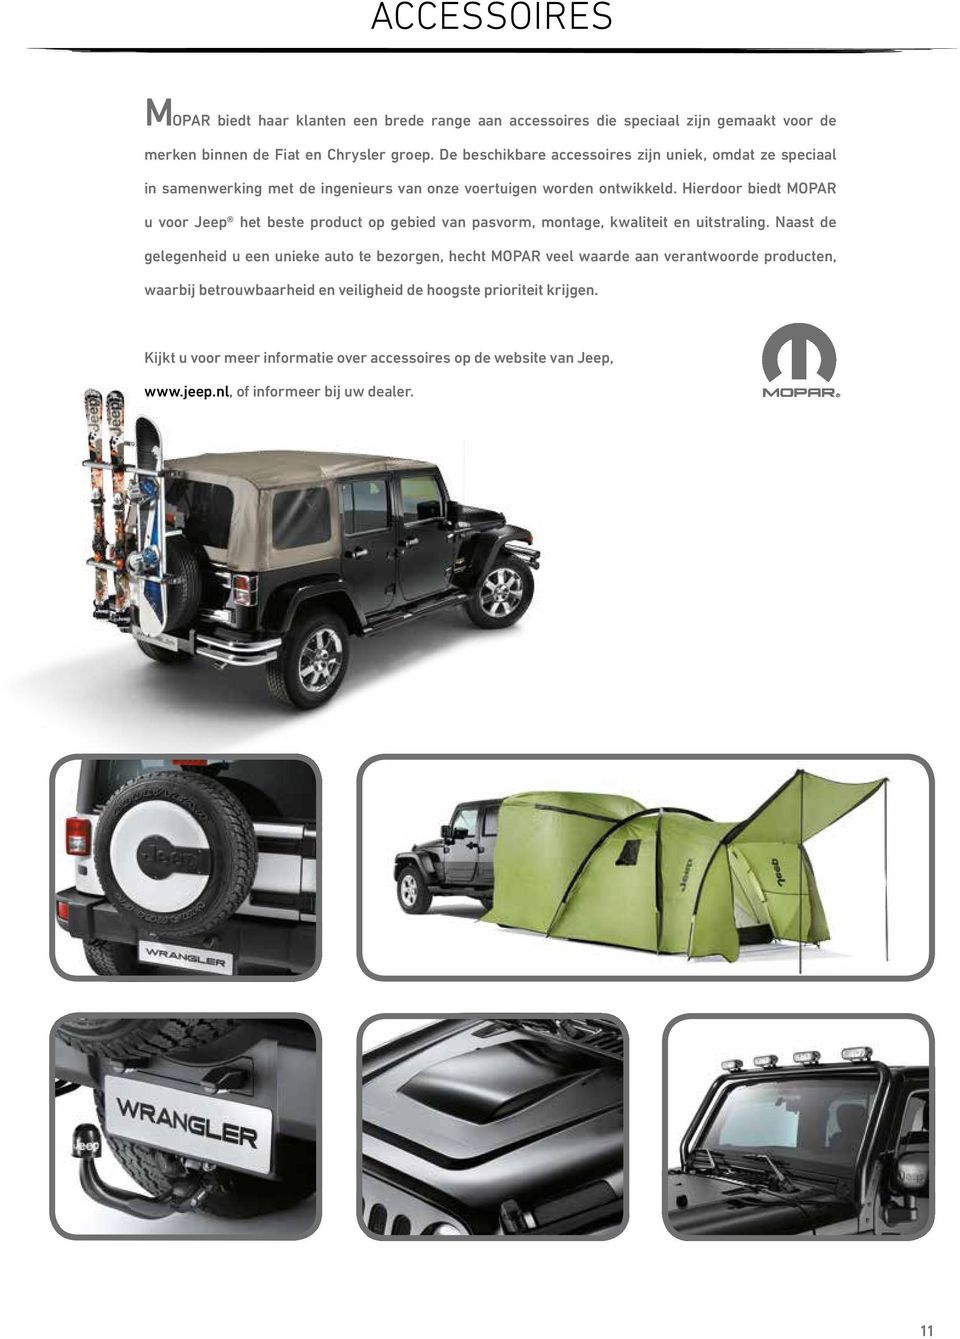 Hierdoor biedt MOPAR u voor Jeep het beste product op gebied van pasvorm, montage, kwaliteit en uitstraling.